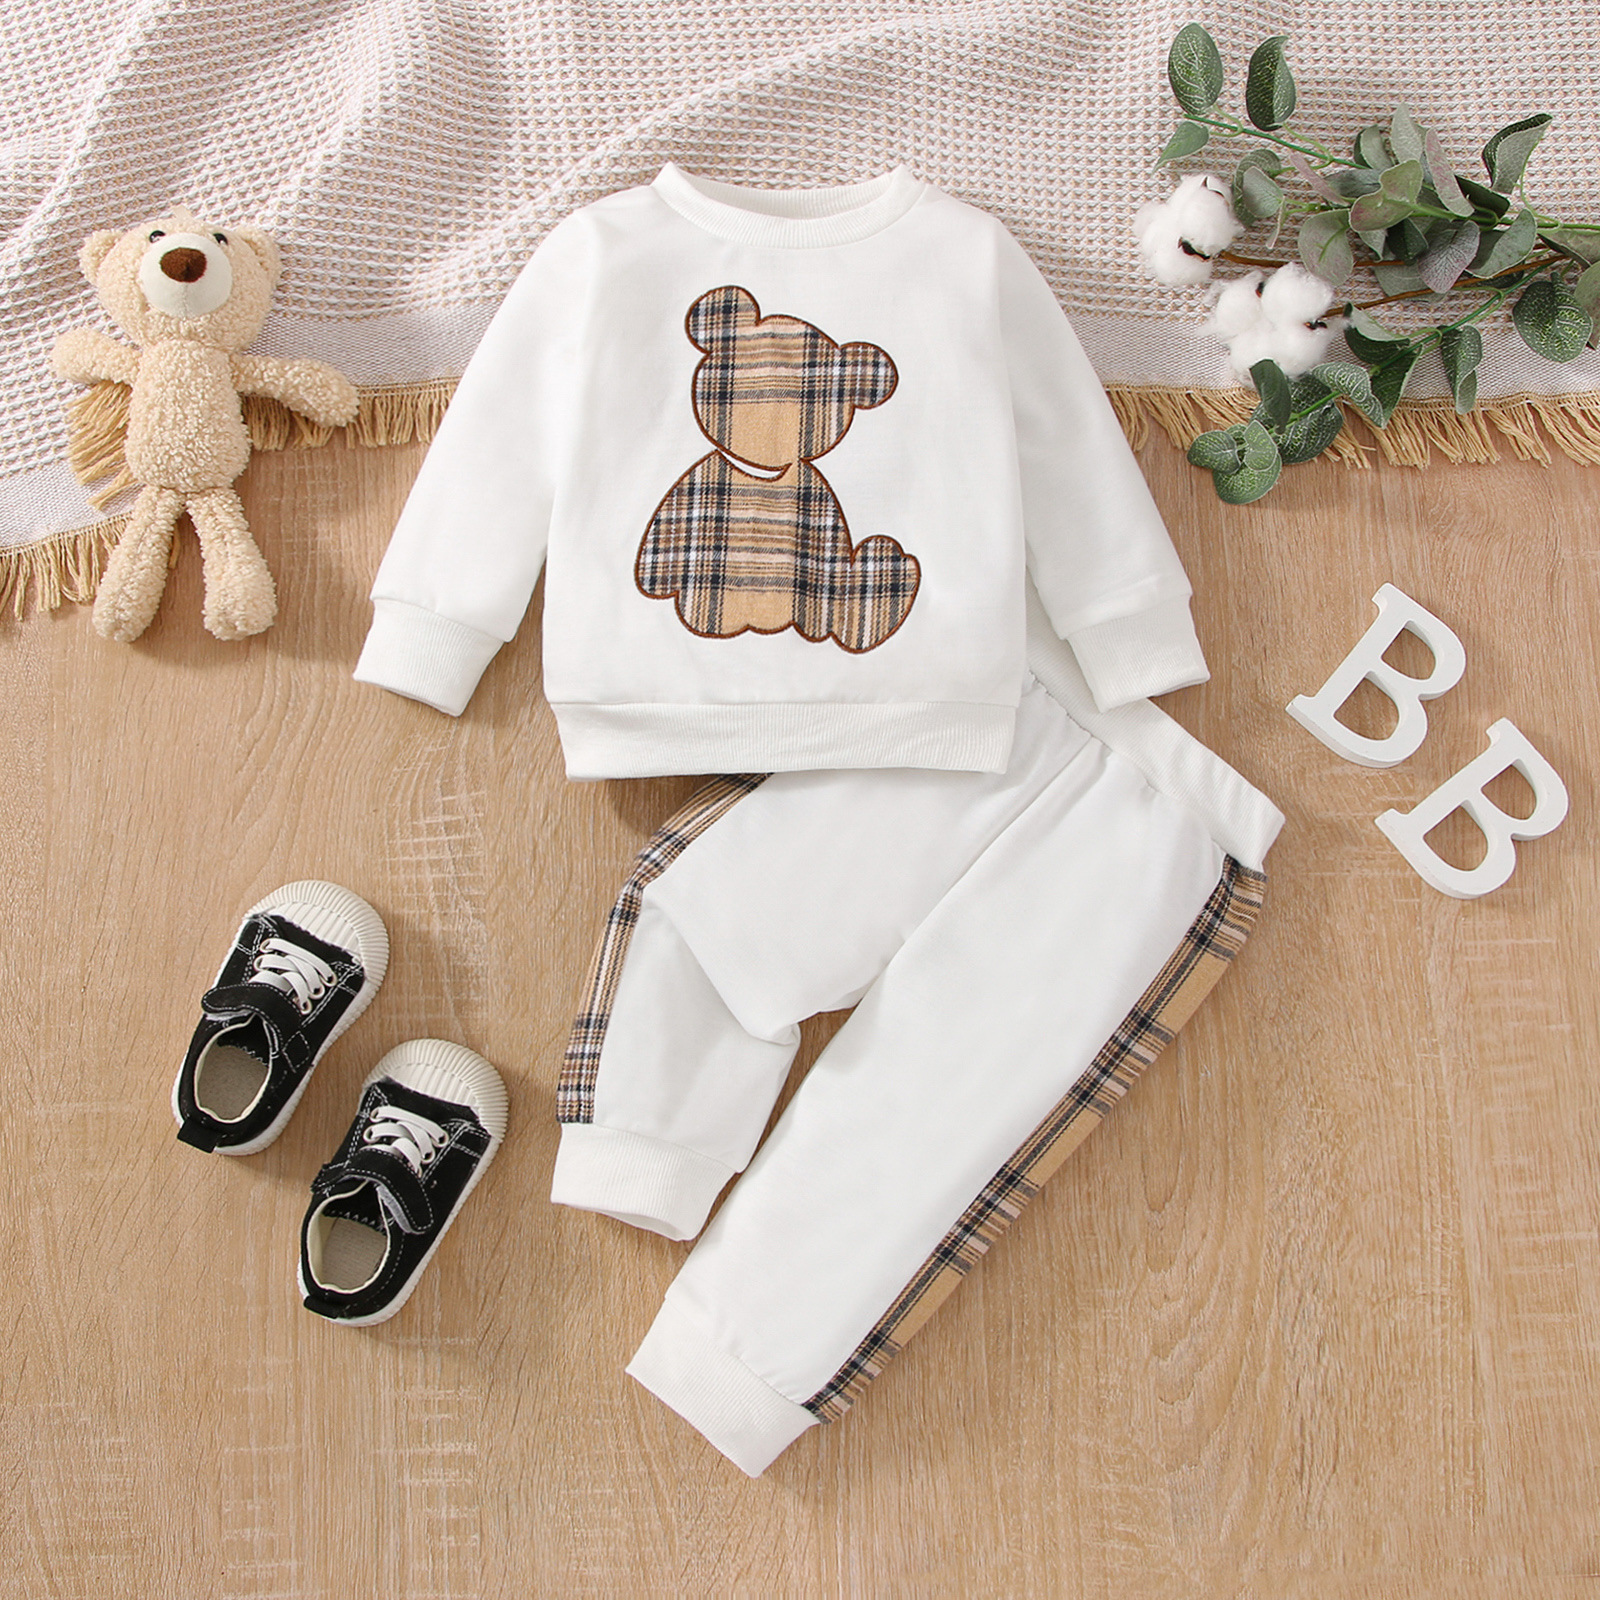 Conjuntos de ropa de otoño para niñas recién nacidas, camisetas con estampado de oso a cuadros de manga larga para niños pequeños, sudadera, pantalones, trajes, chándales de 0 a 24 meses